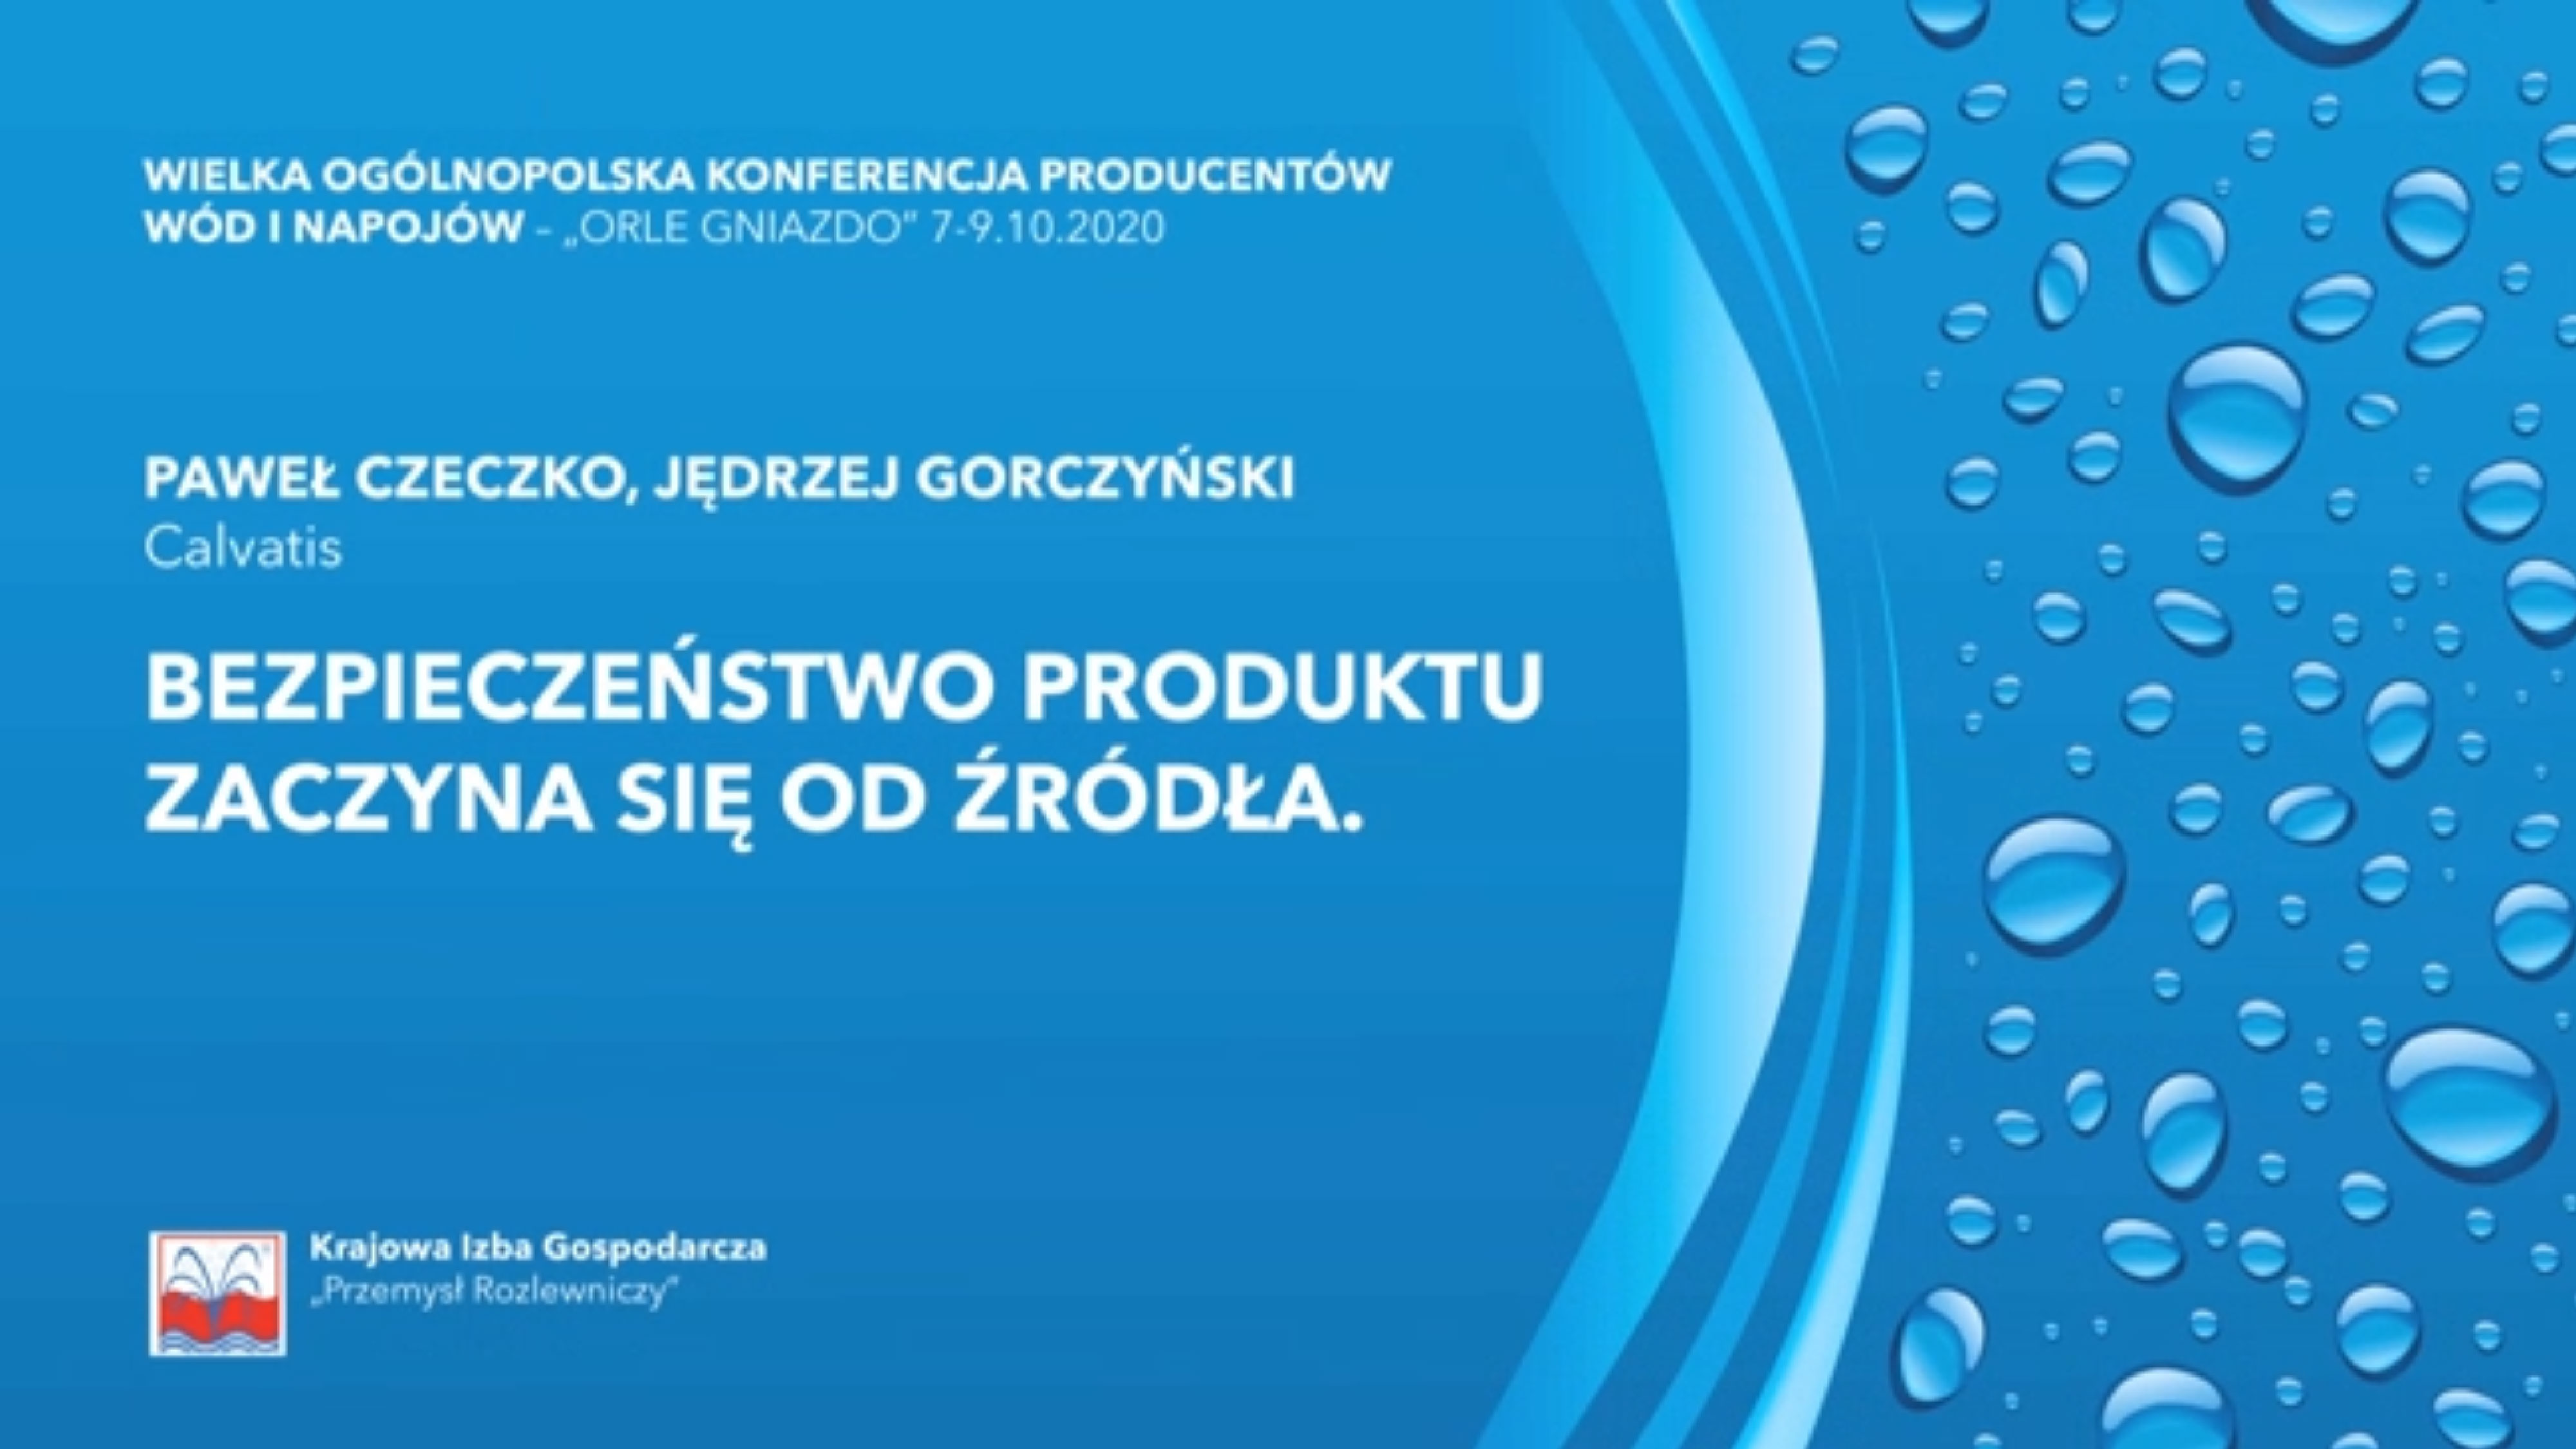 Paweł Czeczko, Jędrzej Gorczyński:  “Bezpieczeństwo produktu zaczyna się od źródła